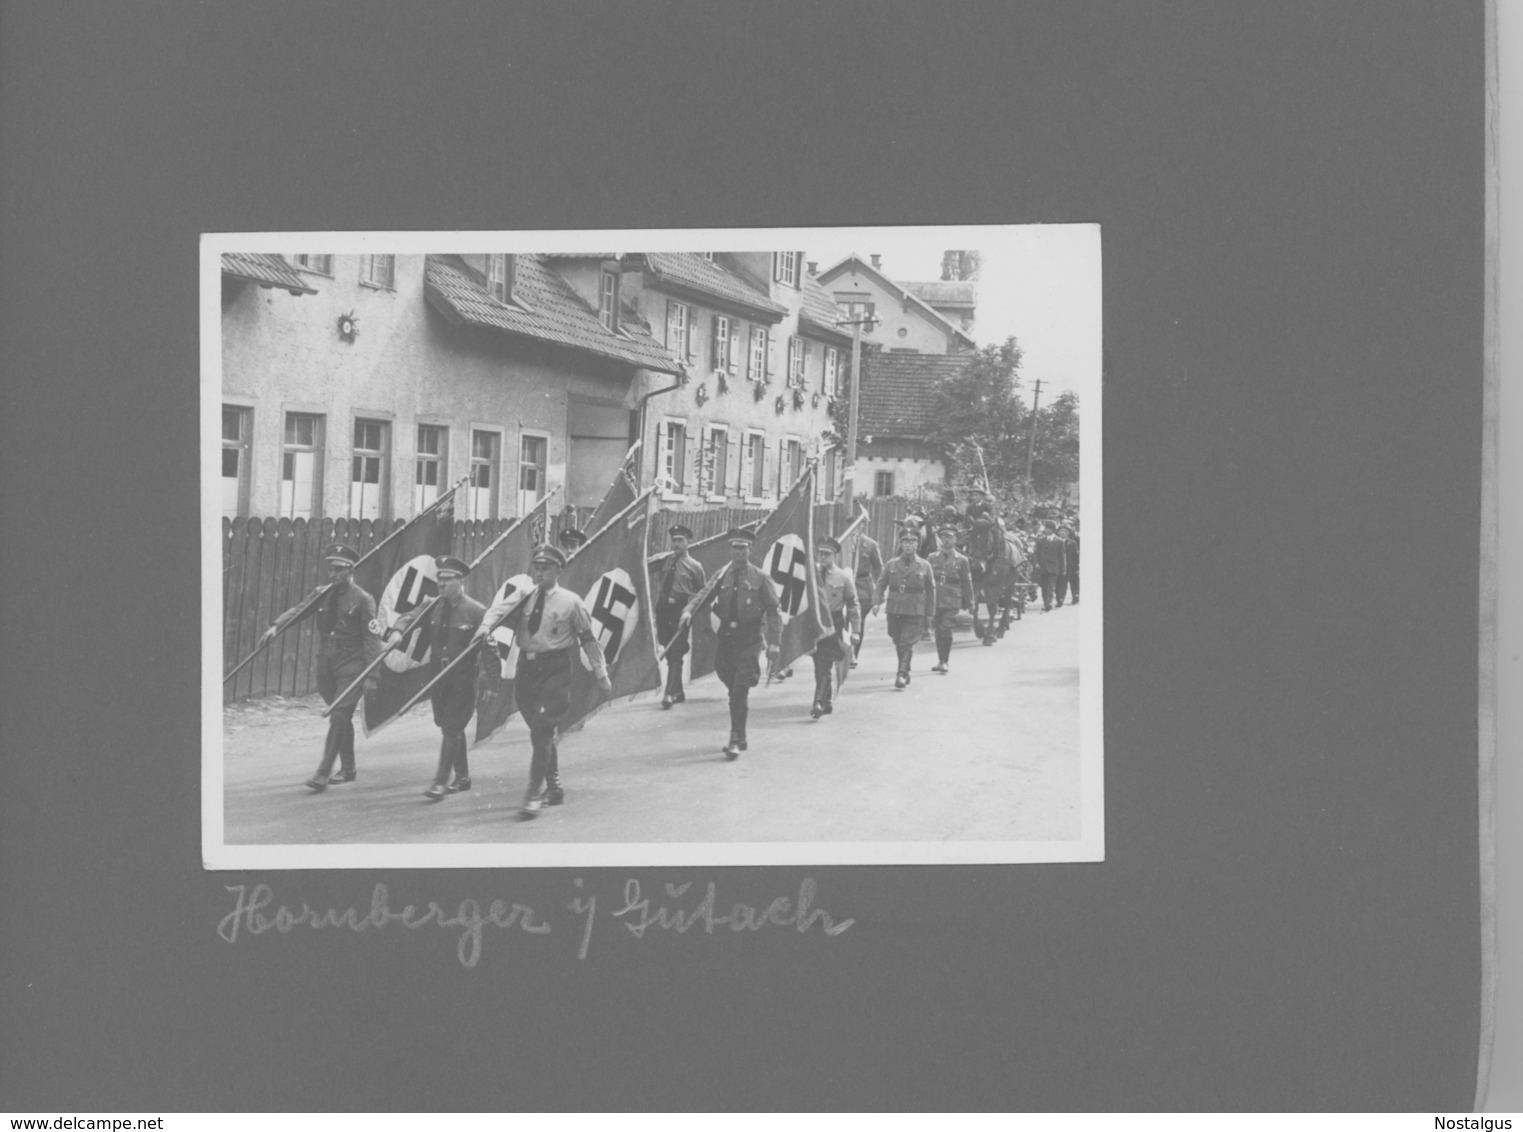 Zeitgeschichte: Nazionalsozialismus im Schwarzwald. Fotoalbum mit 49 Fotos aus Gutach, Wolfach, Reichenbach....